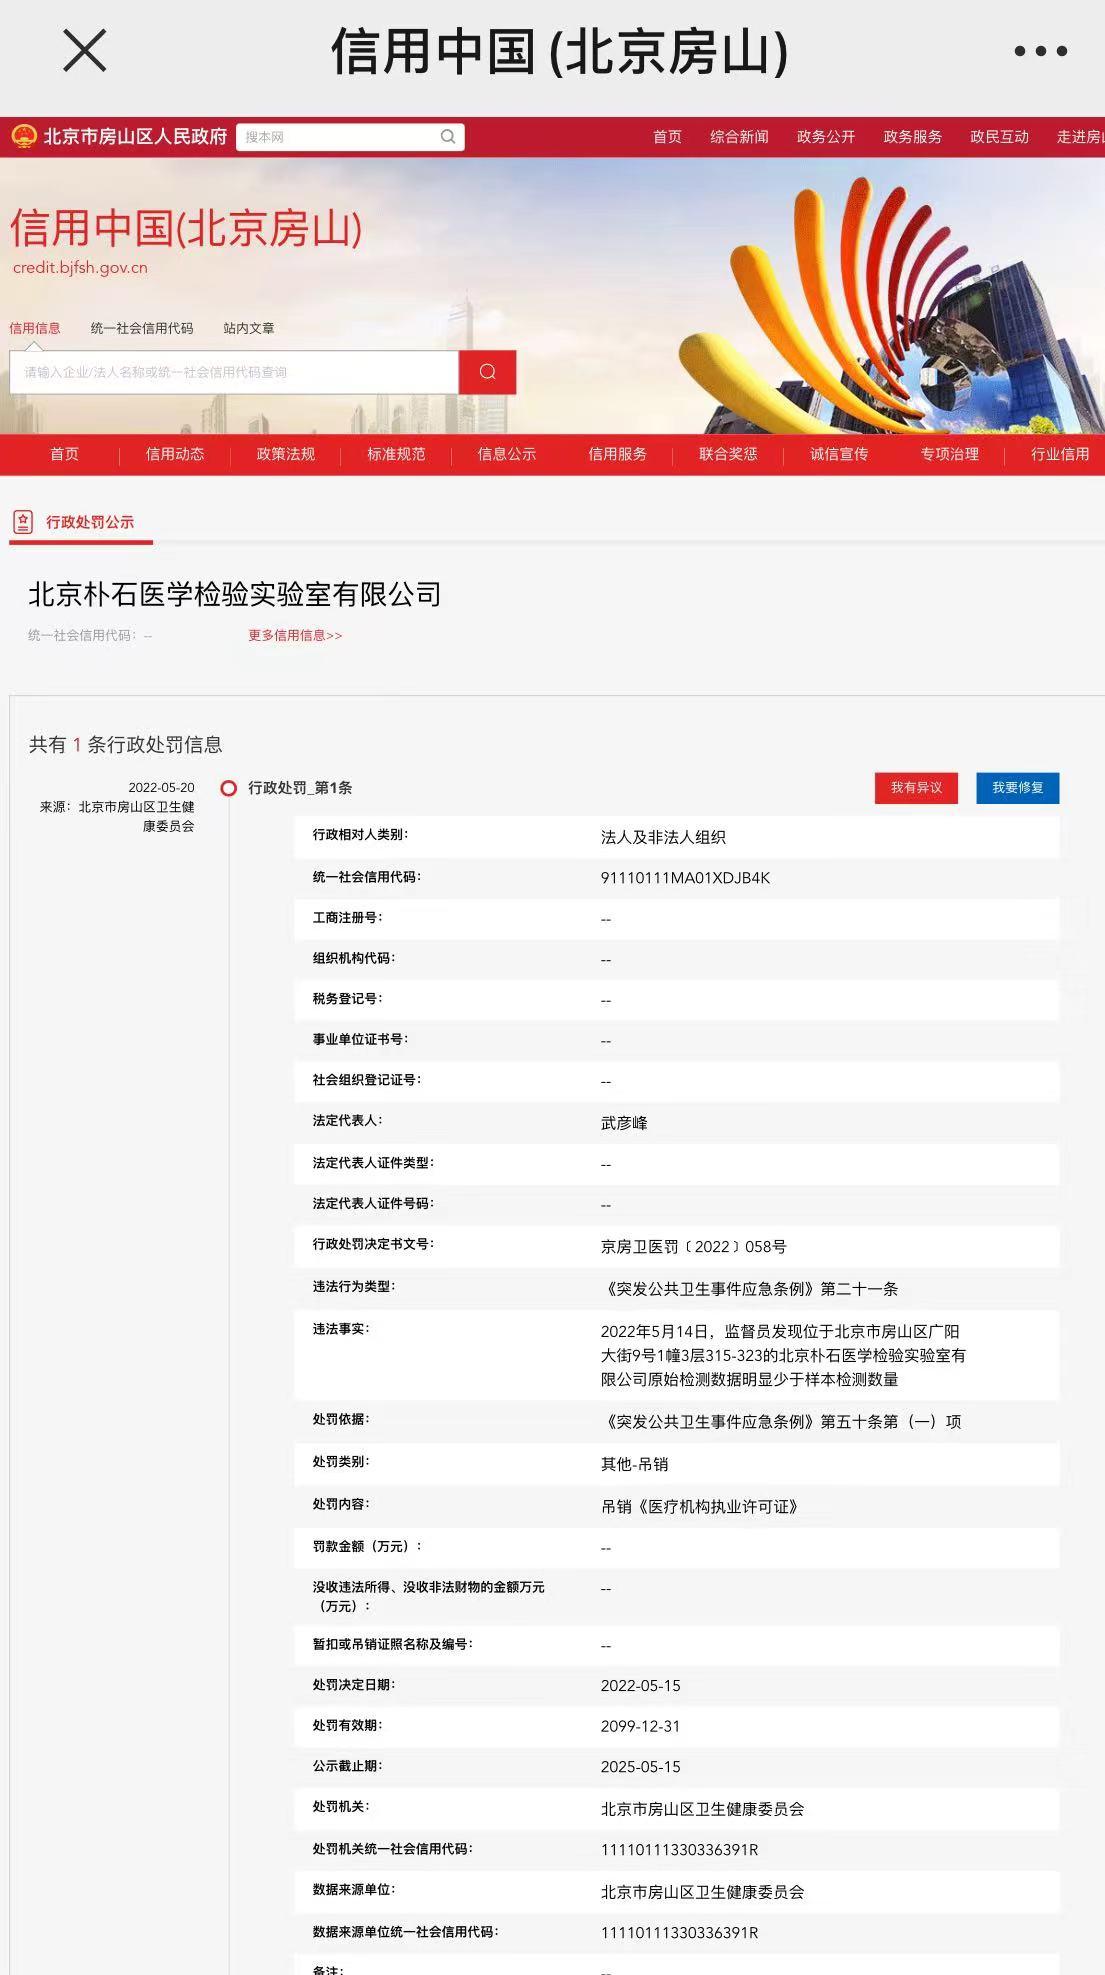 北京一<font color="red">检验</font>实验室被吊销执业许可证：原始检测数据少于样本数量